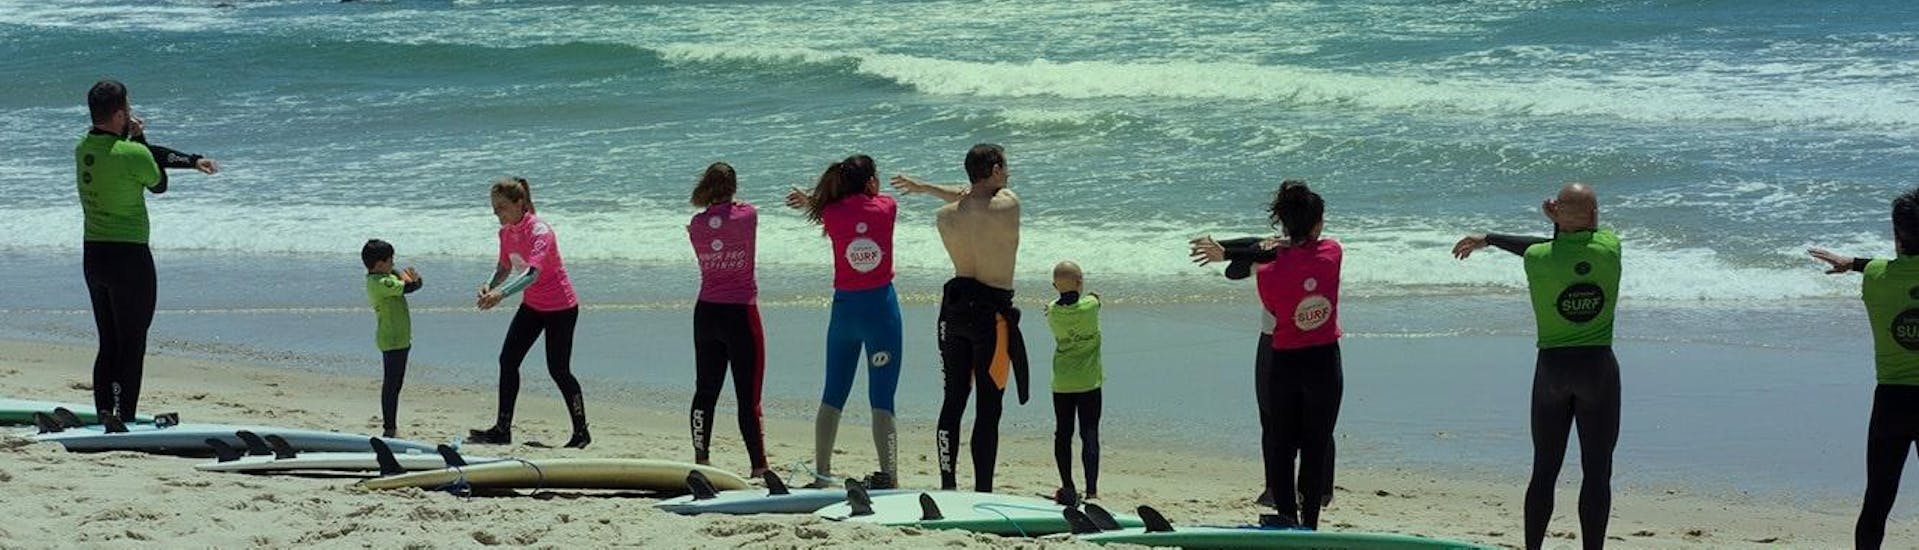 Un grupo de personas en la playa durante las clases de surf para niños y adultos en Espinho con Green Coast Espinho.